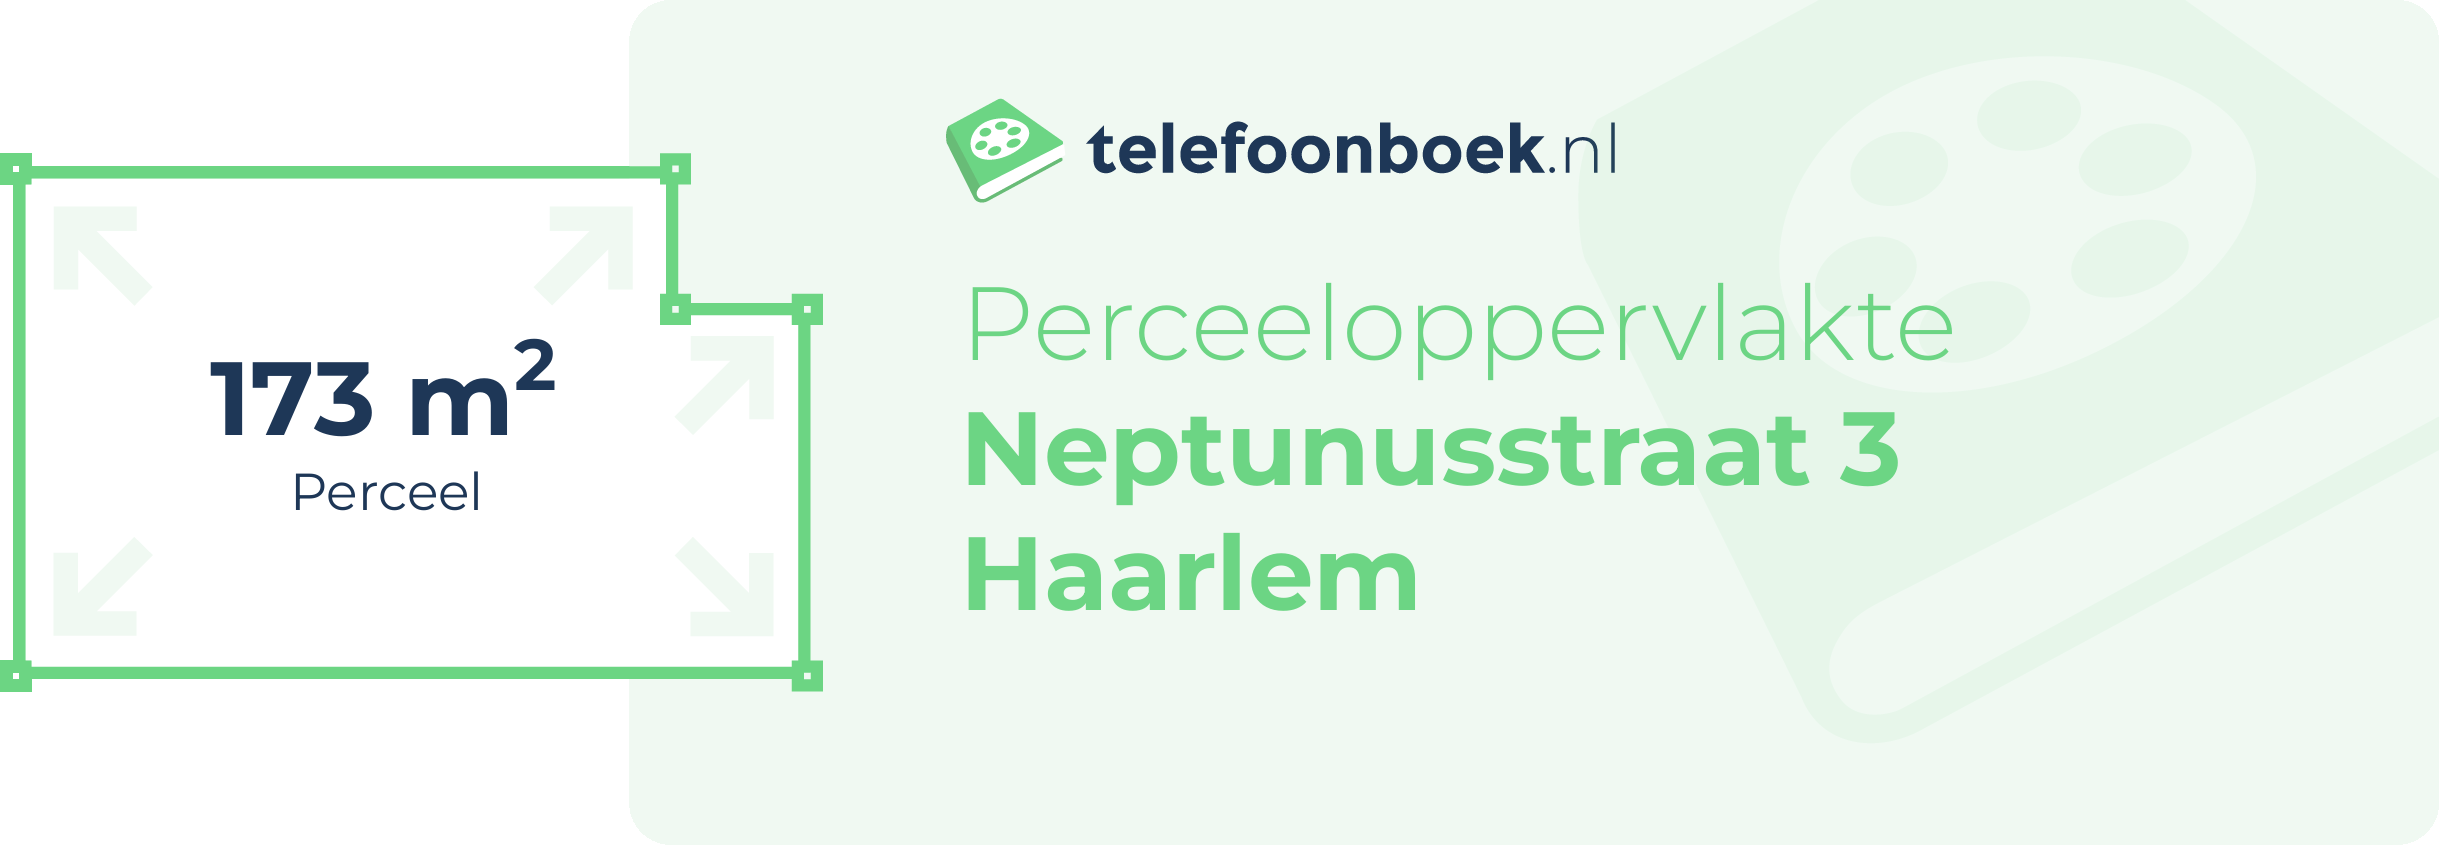 Perceeloppervlakte Neptunusstraat 3 Haarlem